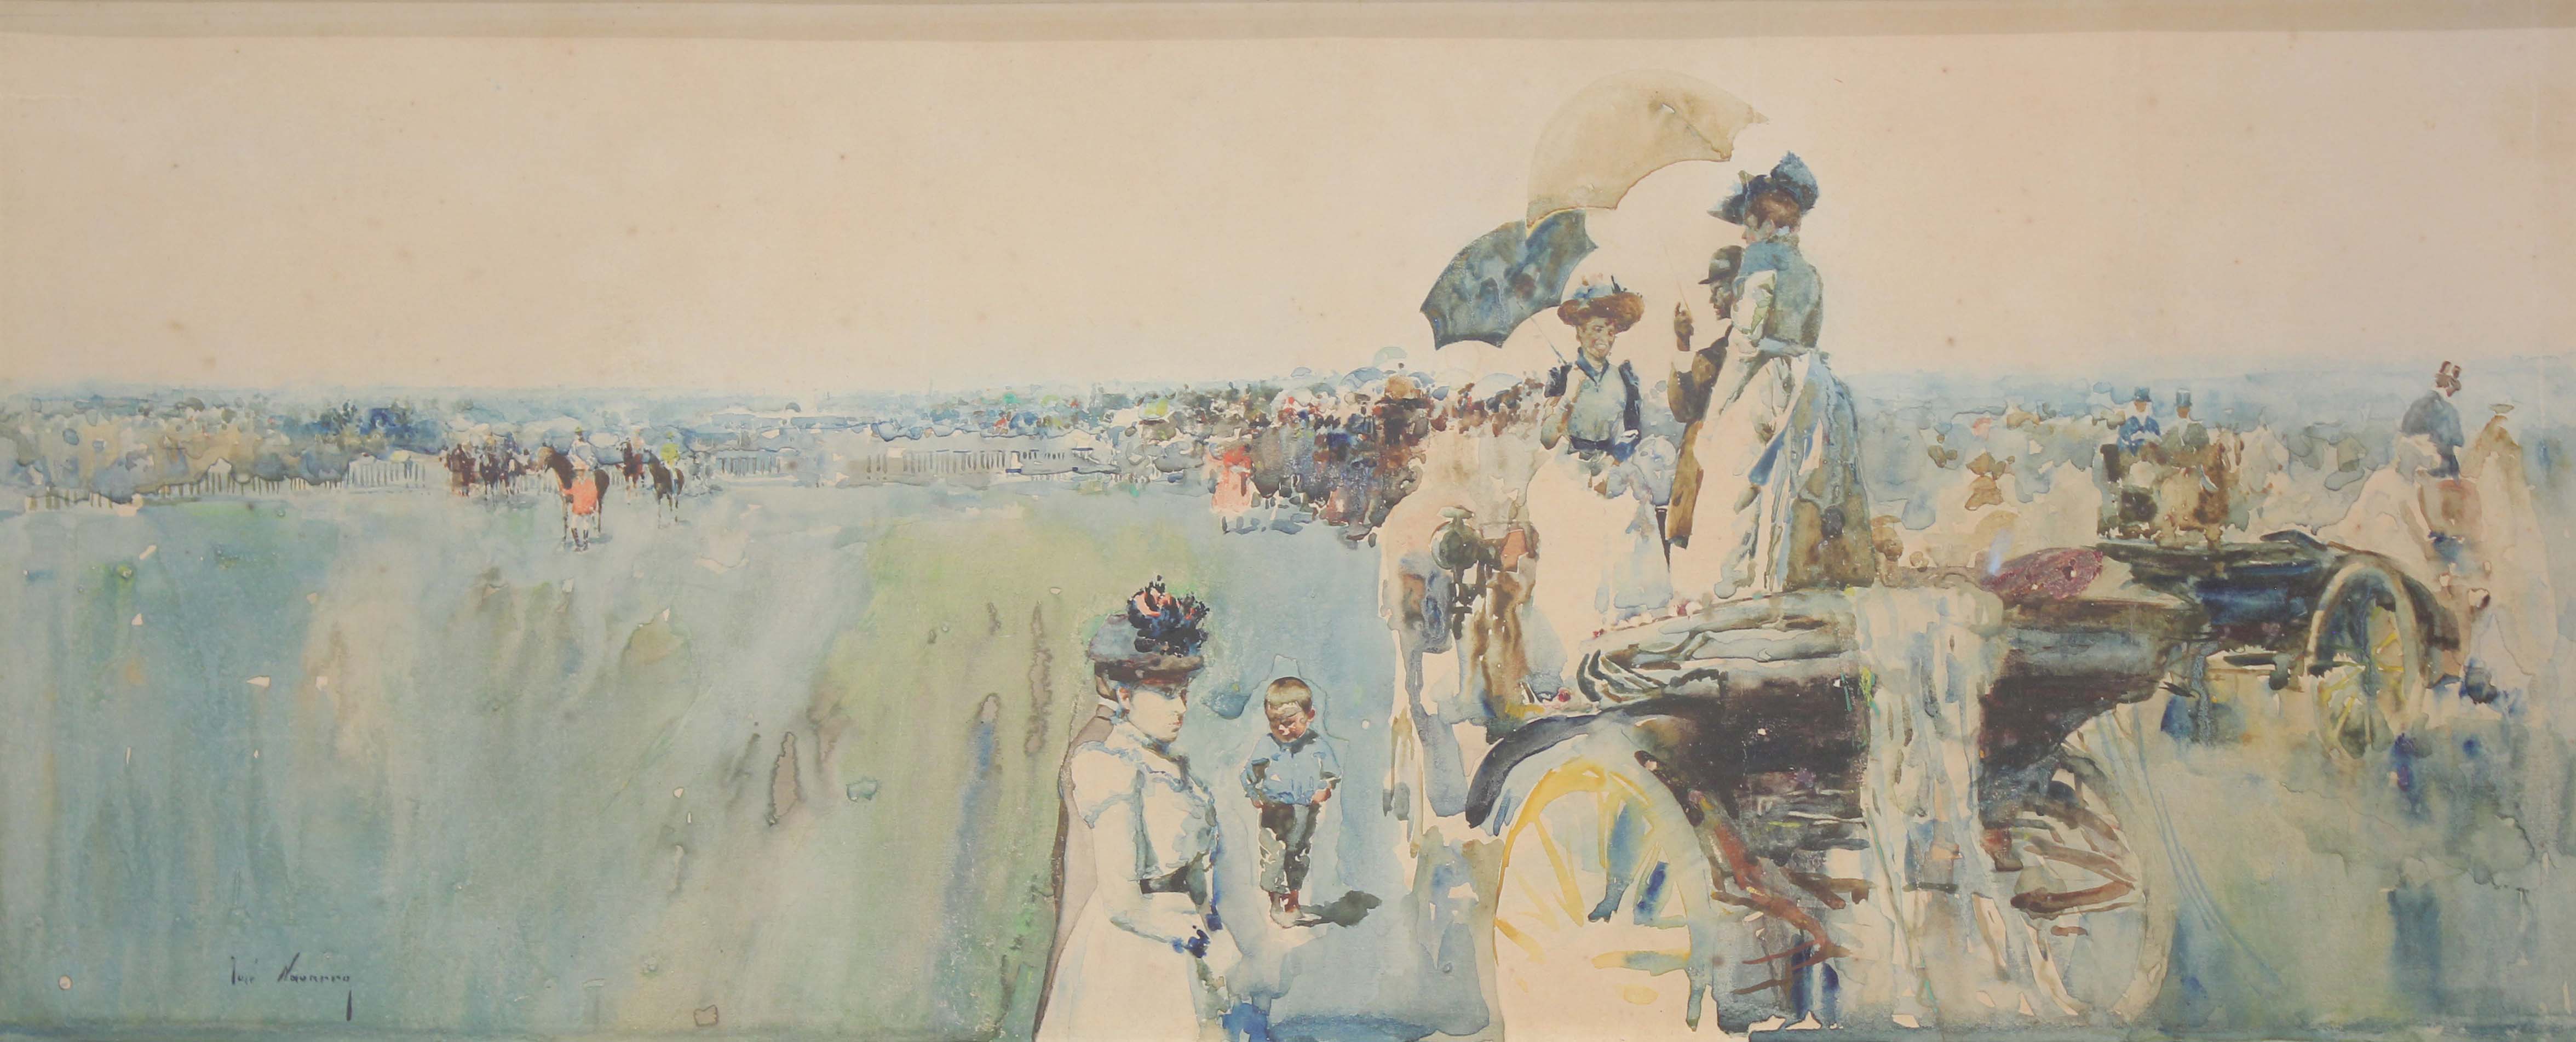 JOSÉ NAVARRO LLORENS (1867-1923). "AT THE HORSE RACES".